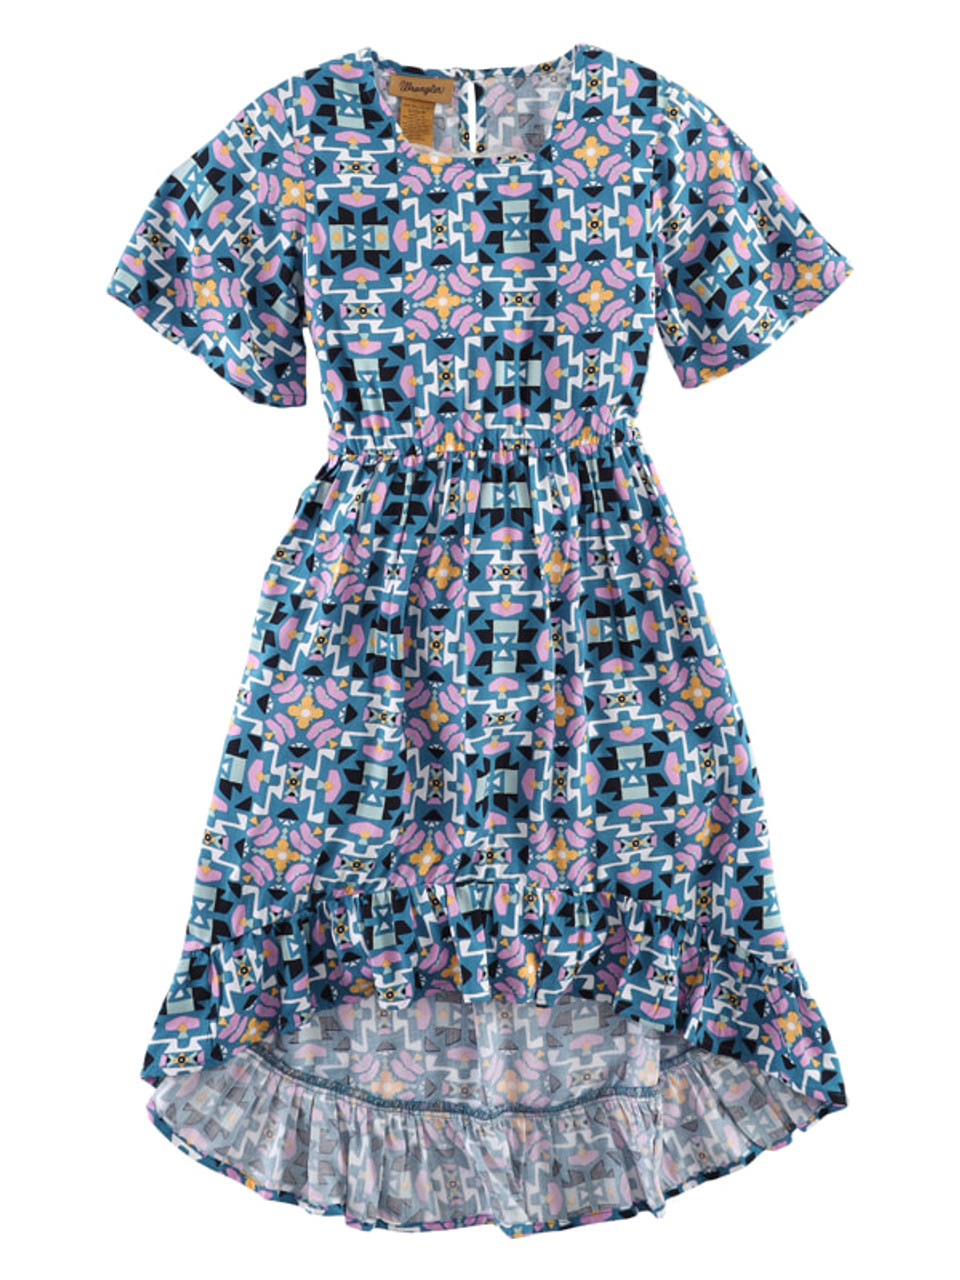 Wrangler Girl's Short Sleeve Dress in Teal Aztec Print